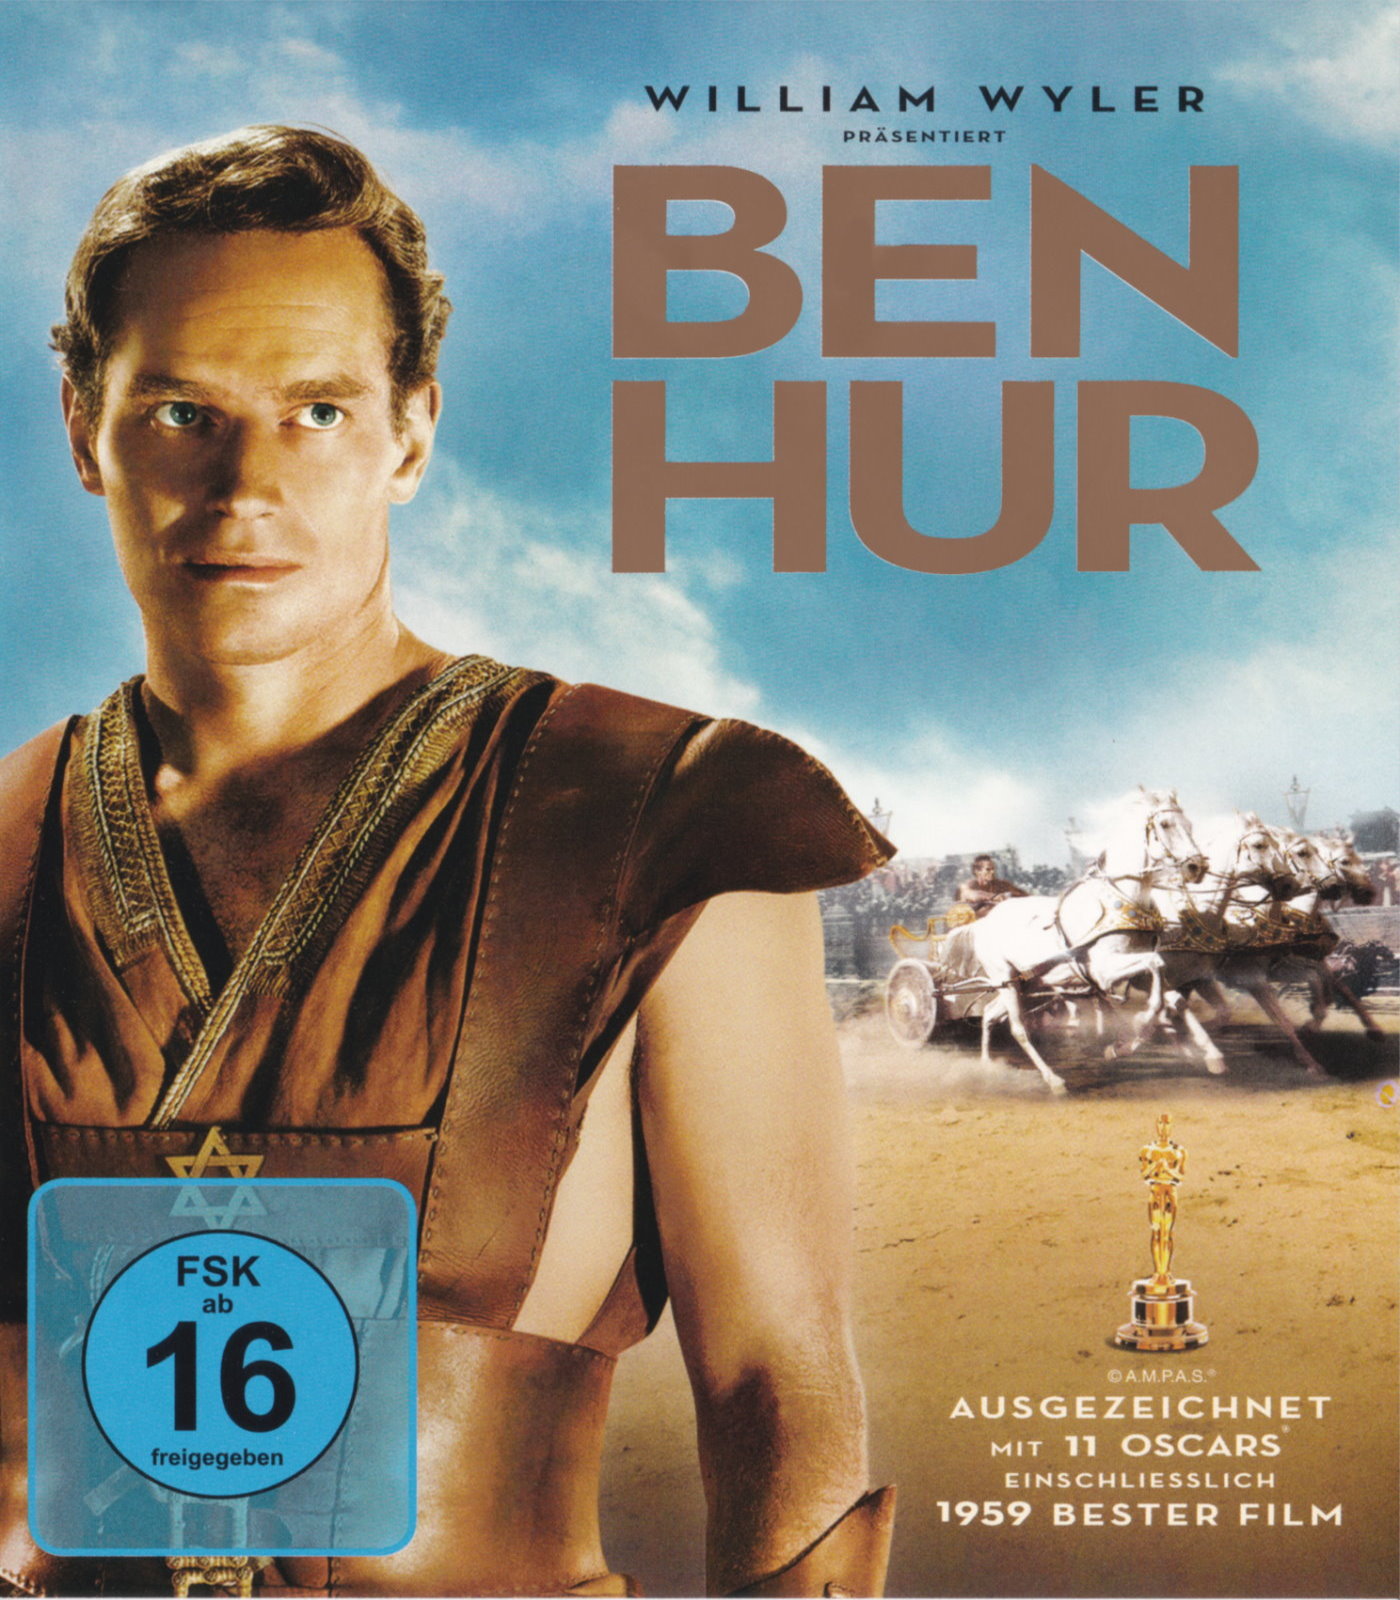 Cover - Ben Hur.jpg